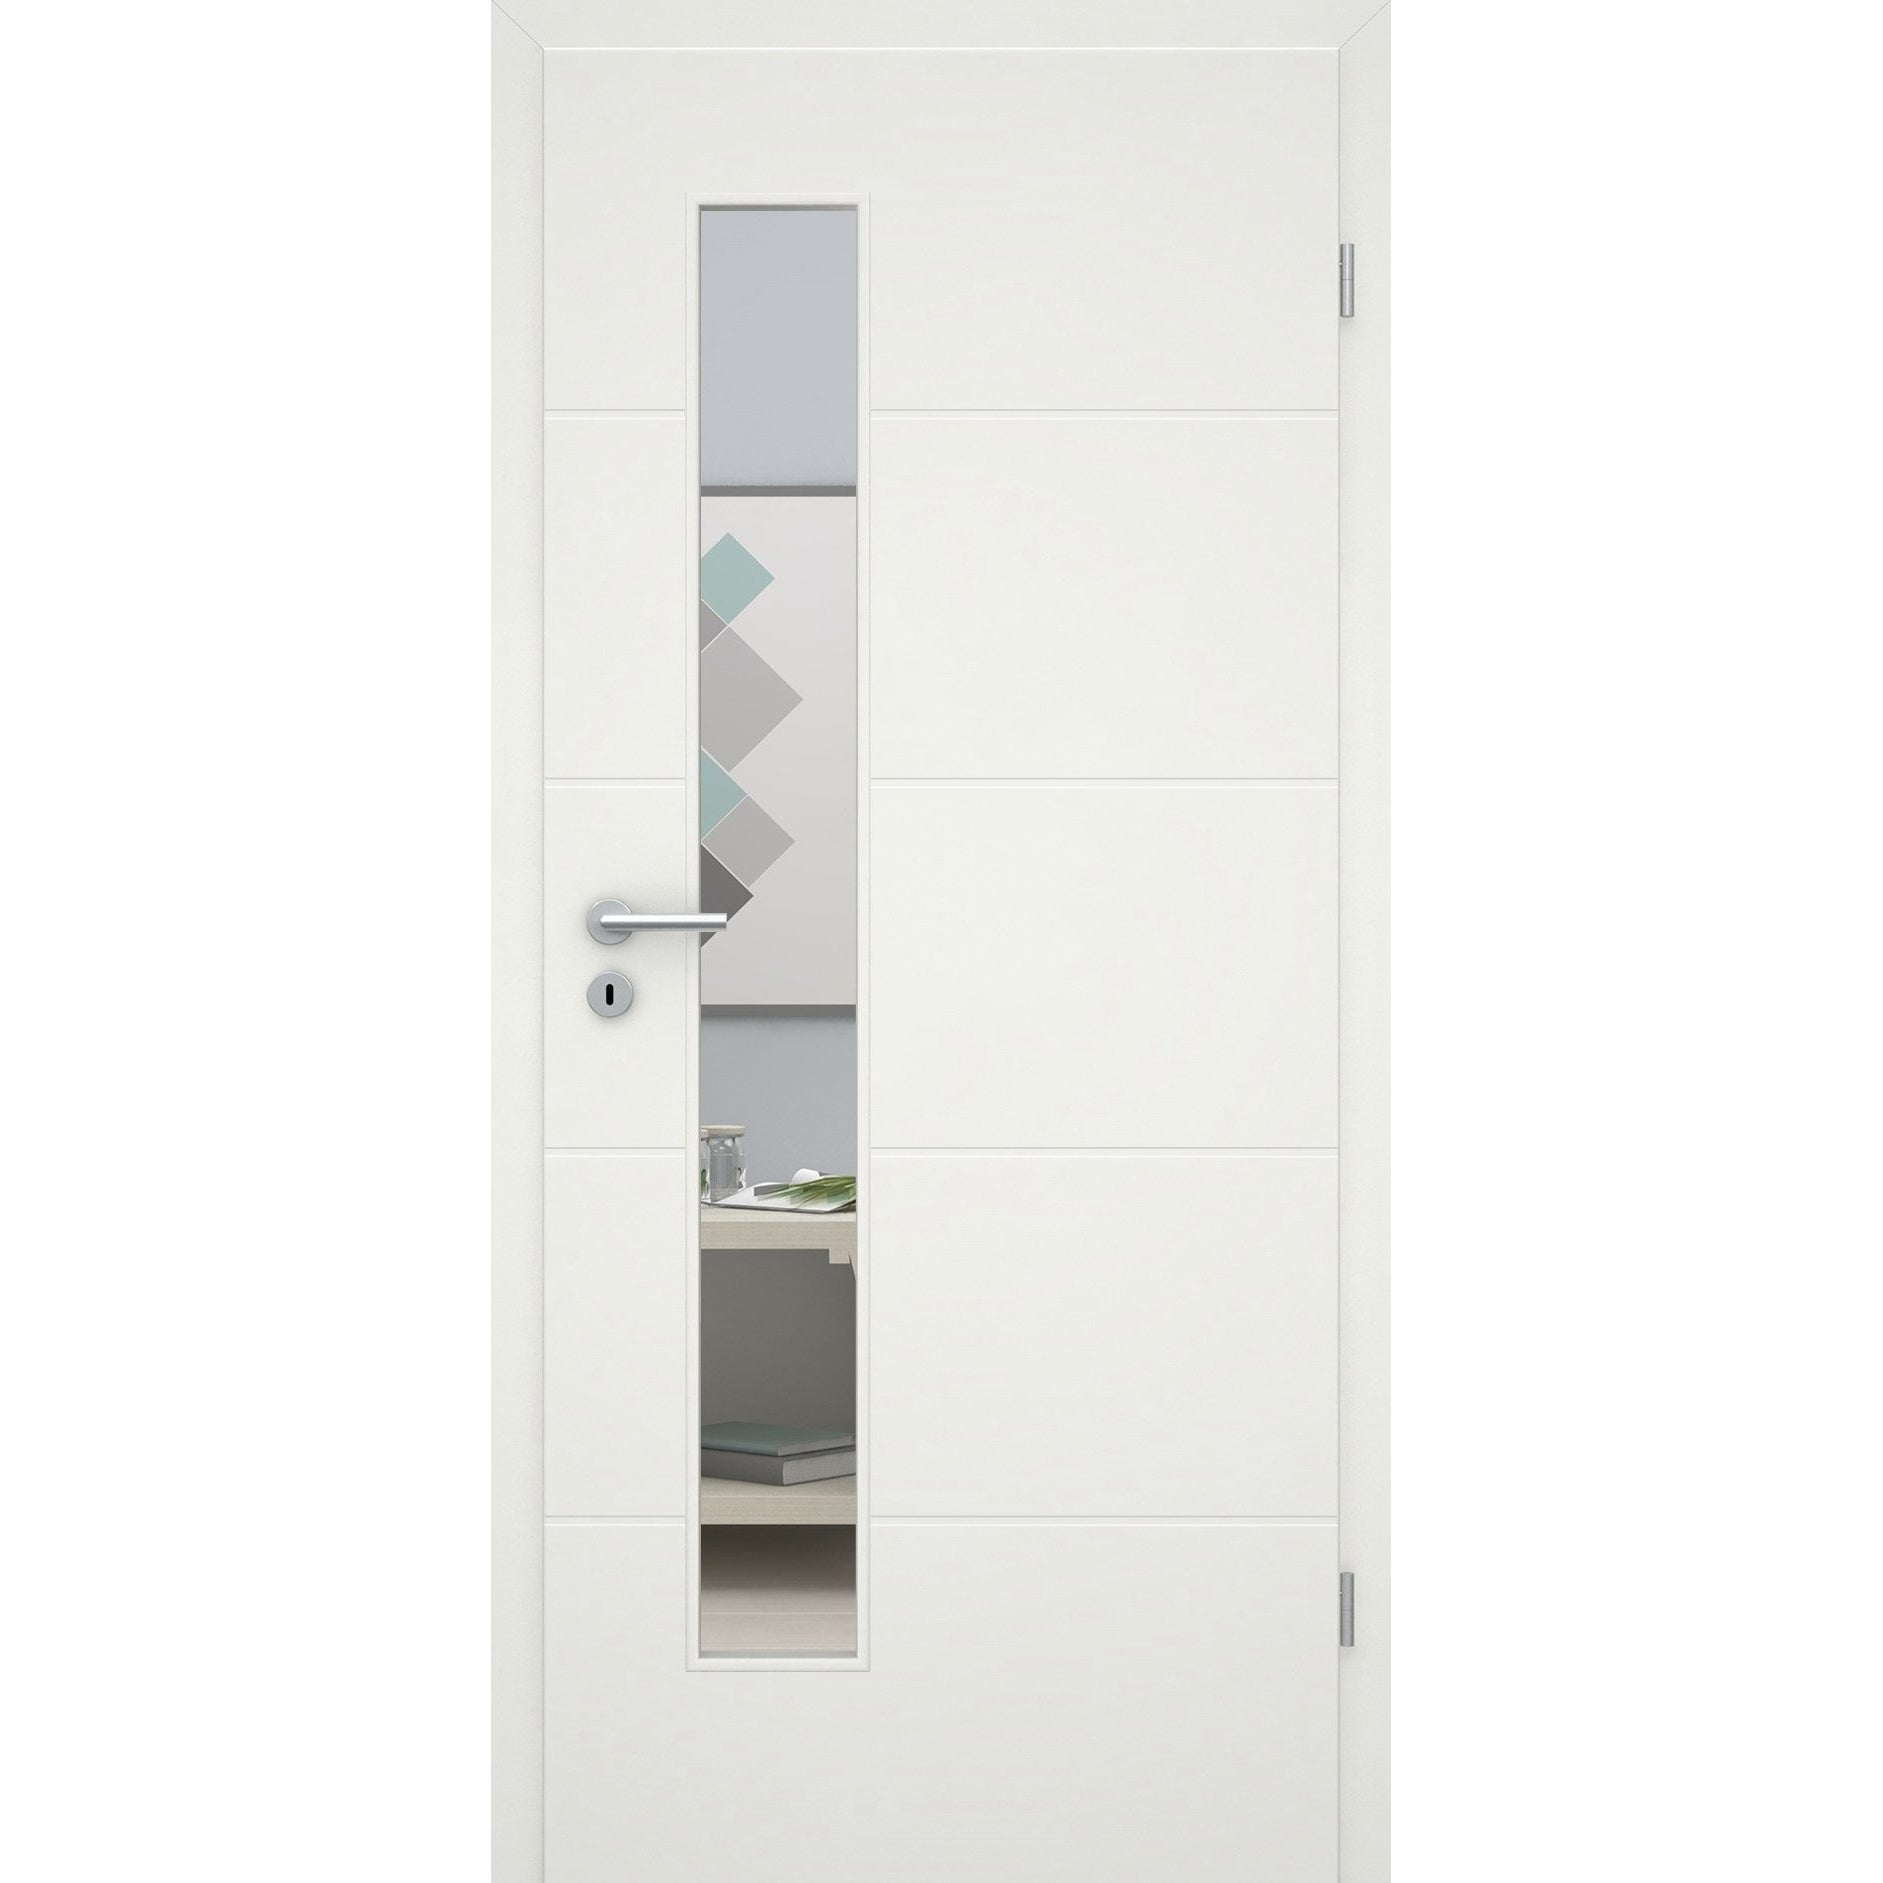 Zimmertür mit Zarge und Lichtausschnittsoft-weiß 4 Rillen Eckkante - Modell Designtür Q41LAS